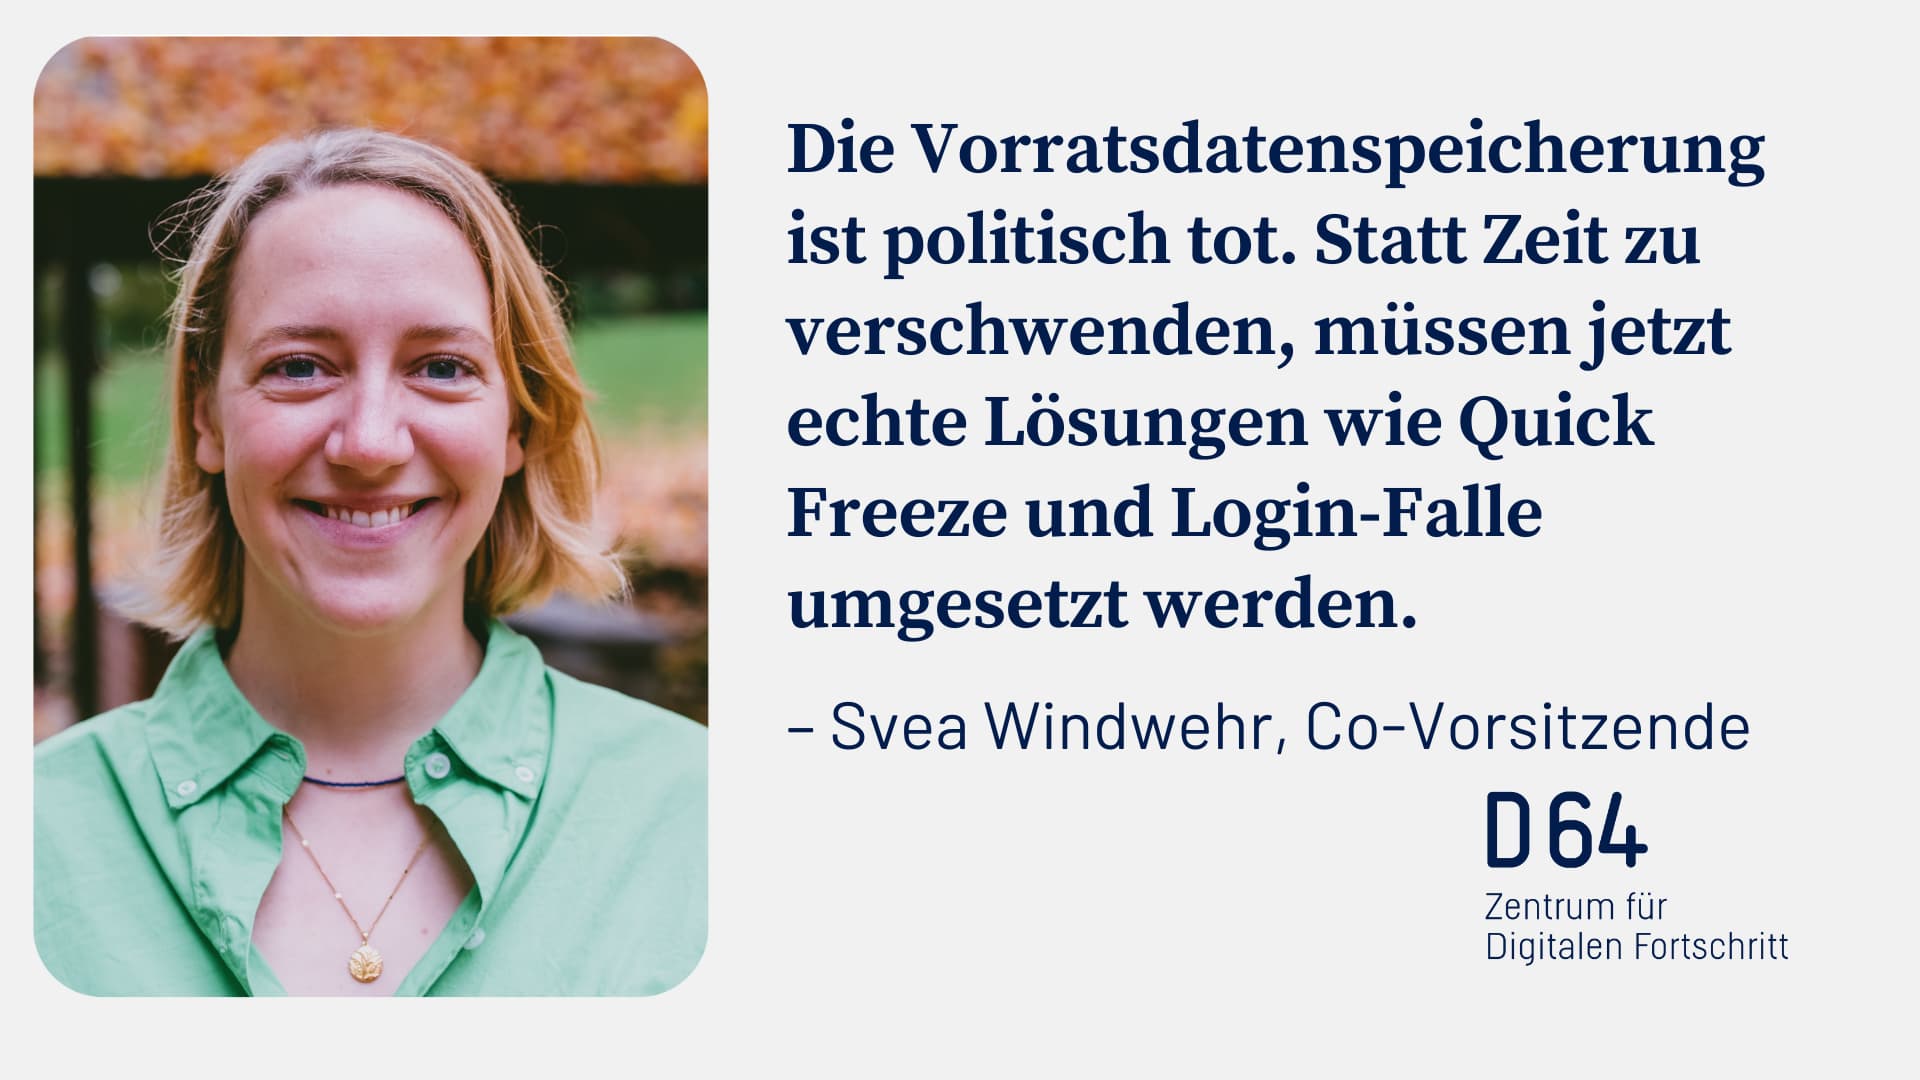 Sharepic von D64 mit Porträt der Co-Vorsitzenden Svea Windwehr. Daneben das Zitat: "Die Vorratsdatenspeicherung ist politisch tot. Statt Zeit zu verschwenden, müssen jetzt echte Lösungen wie Quick Freeze und Login-Falle umgesetzt werden."